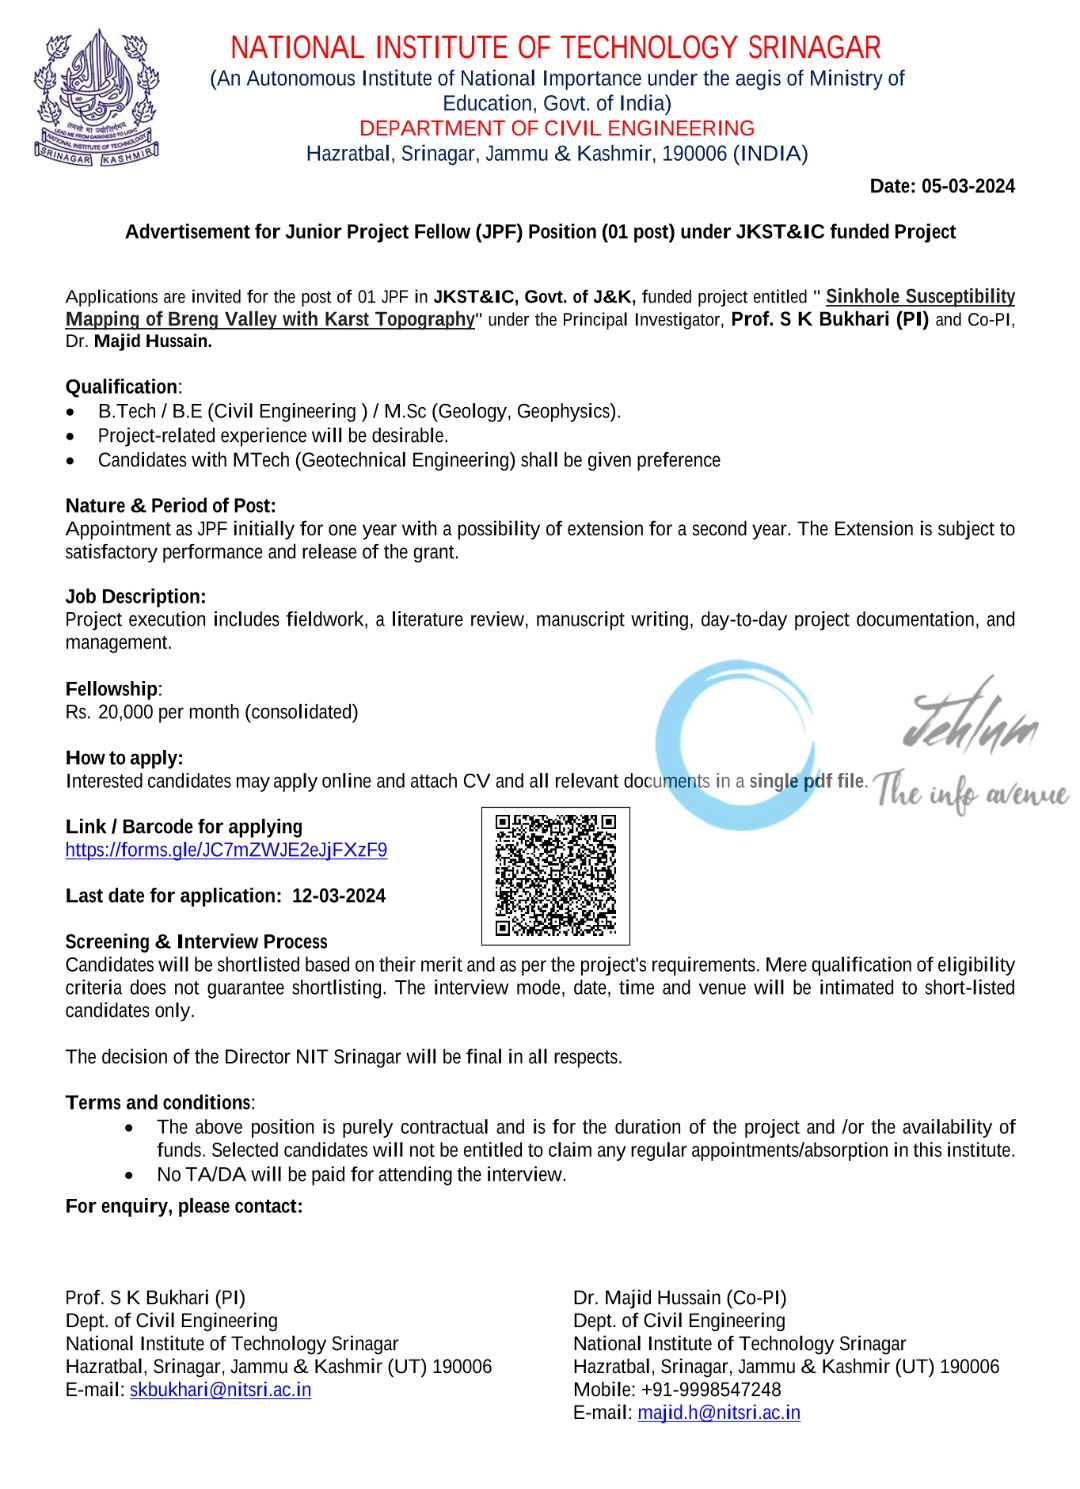 NIT SRINAGAR DEPTT OF CIVIL ENGINEERING JPF ADVERTISEMENT NOTICE 2024